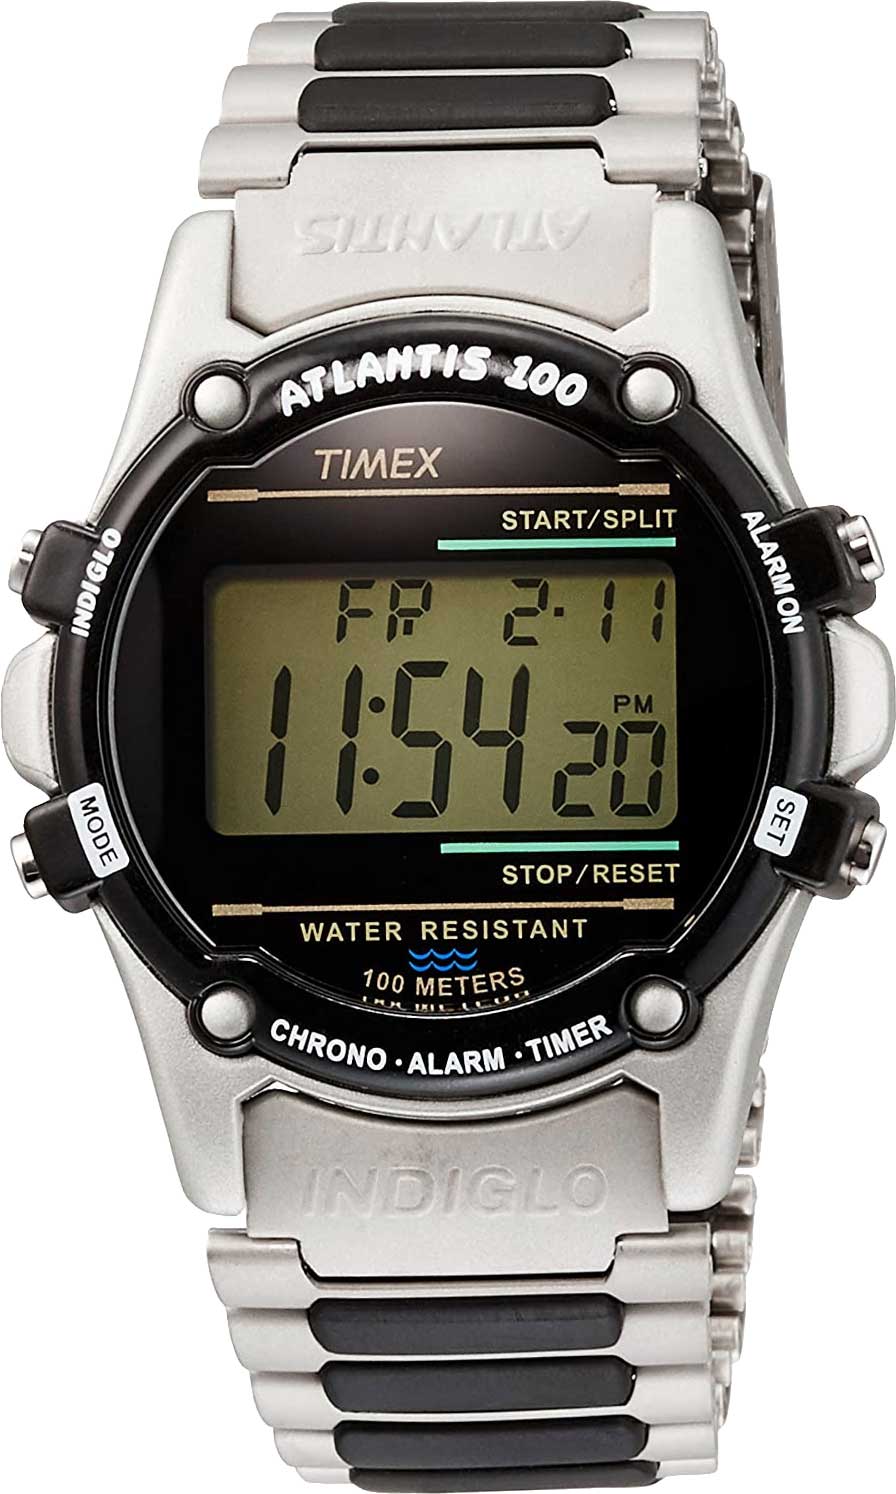 Наручные часы Timex TW2U31100 с хронографом